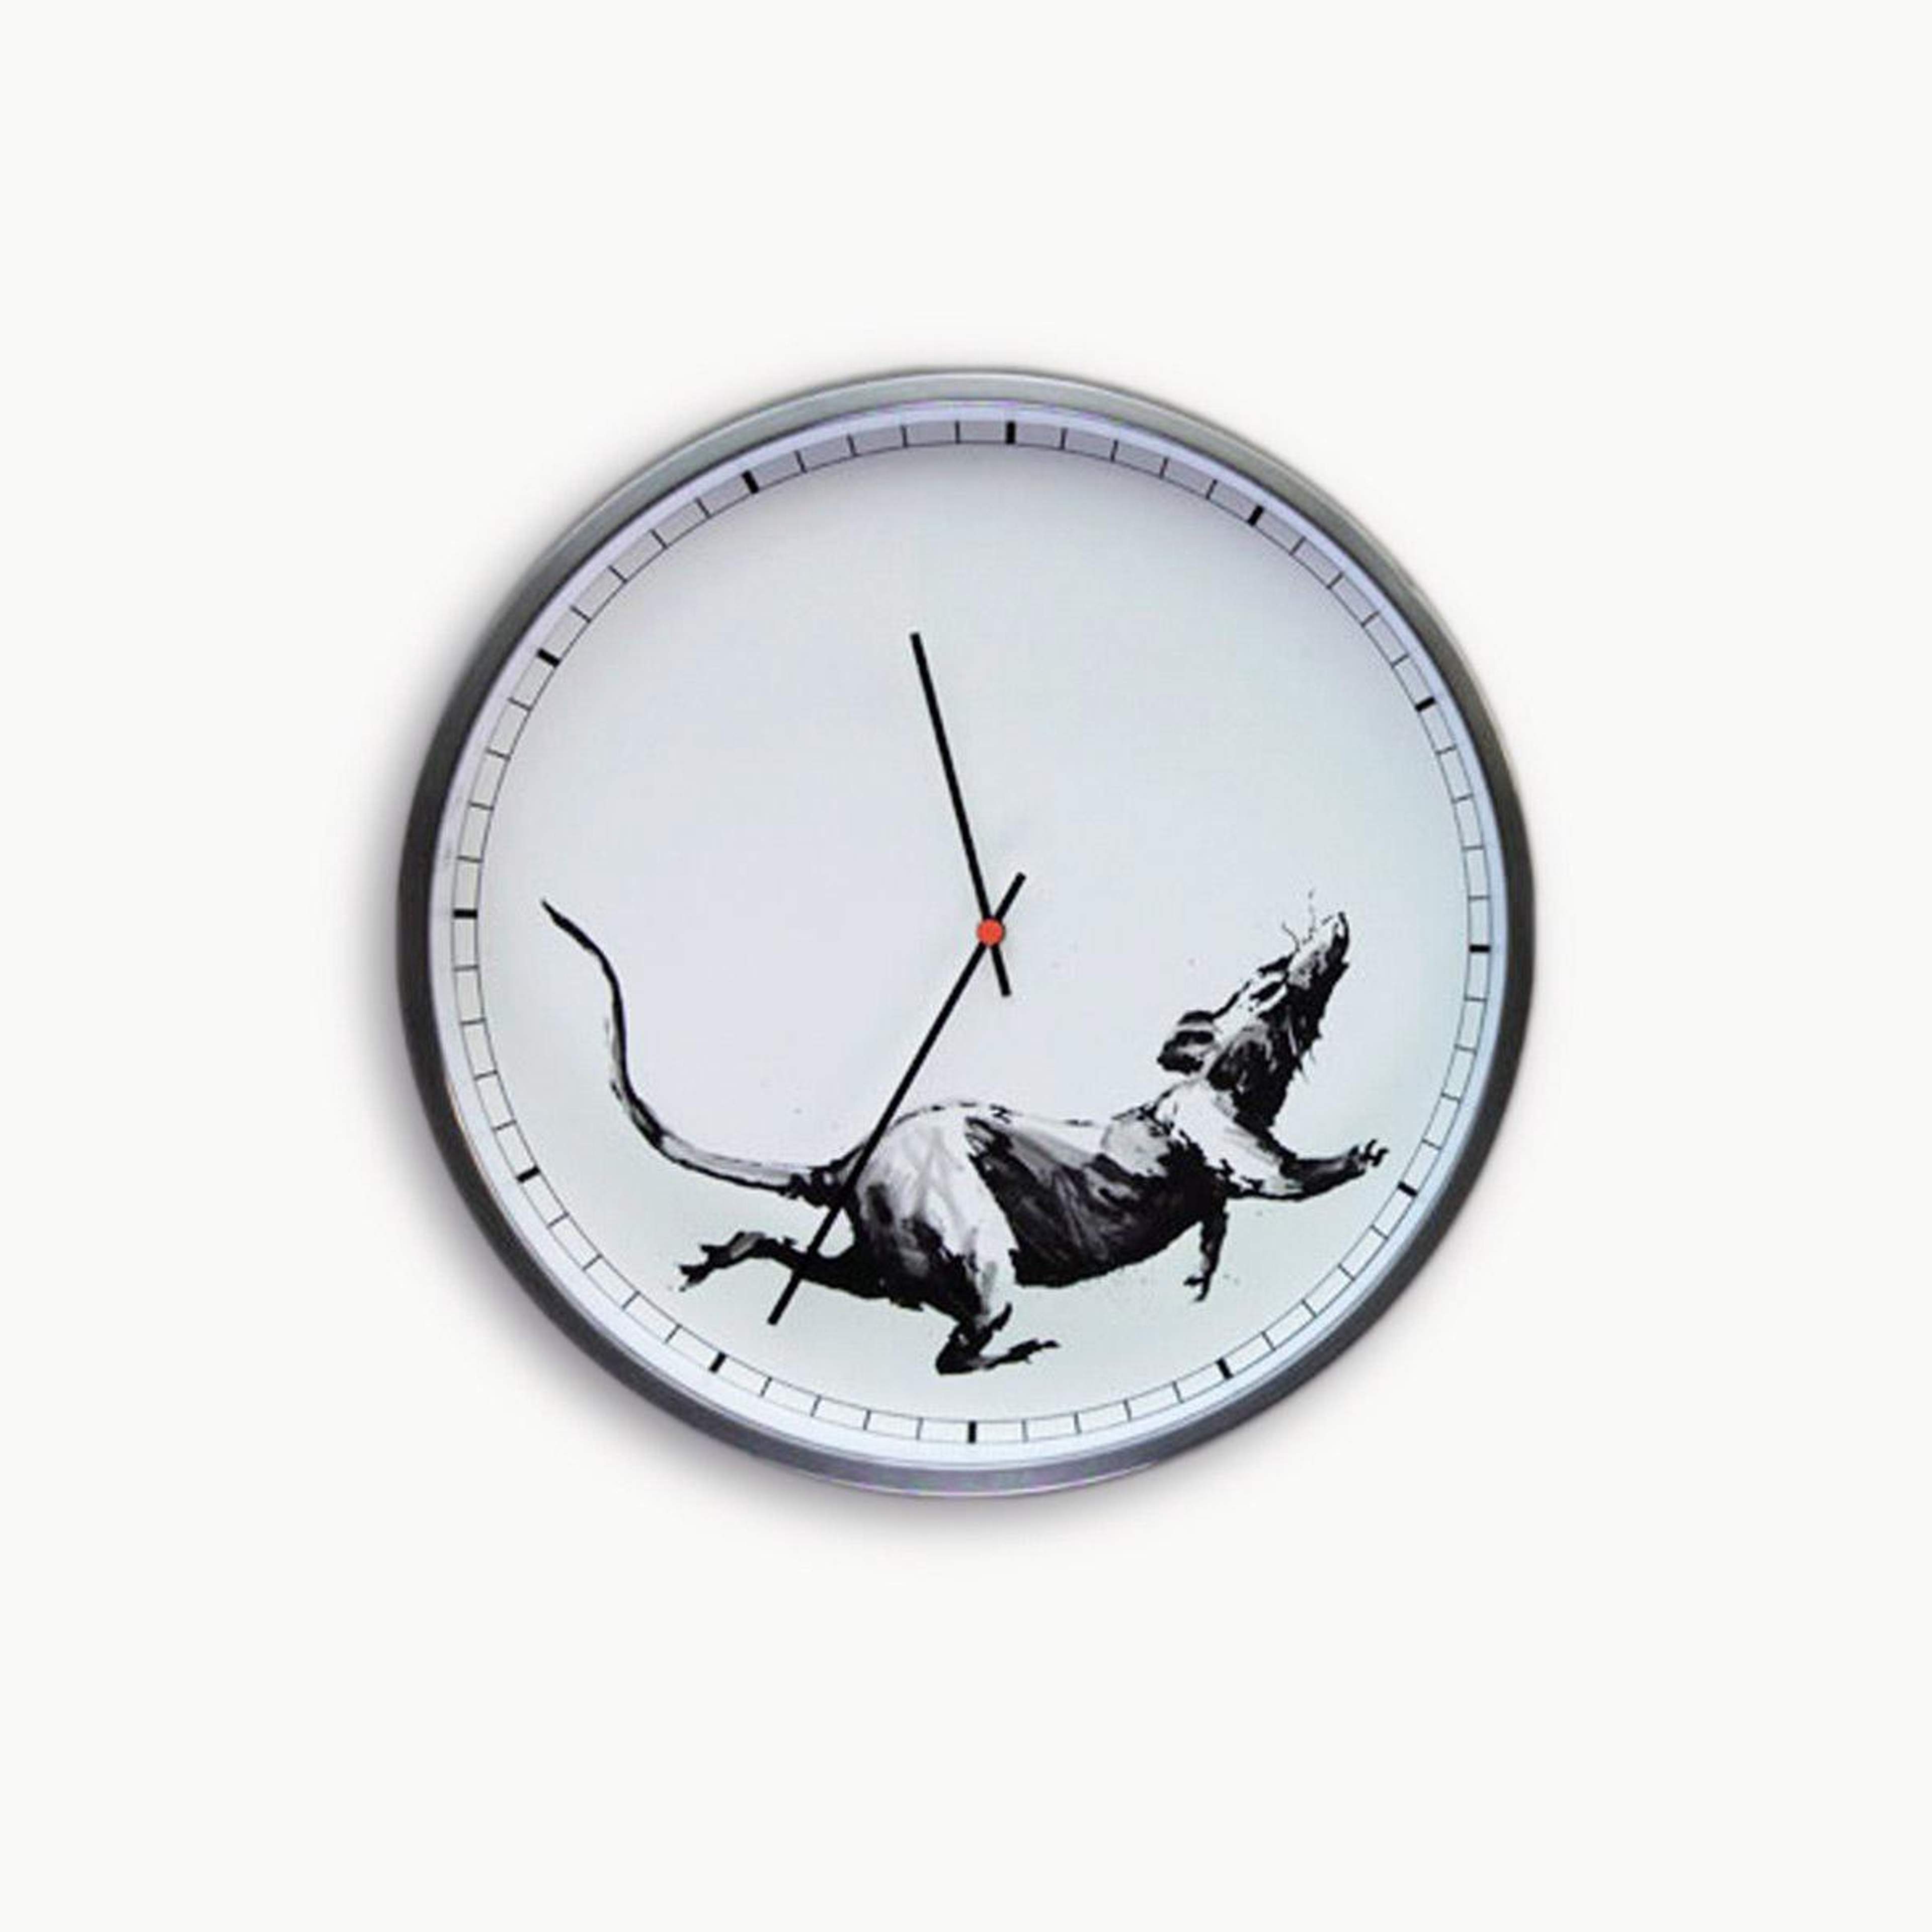 Banksy™ Clock - Mixed media